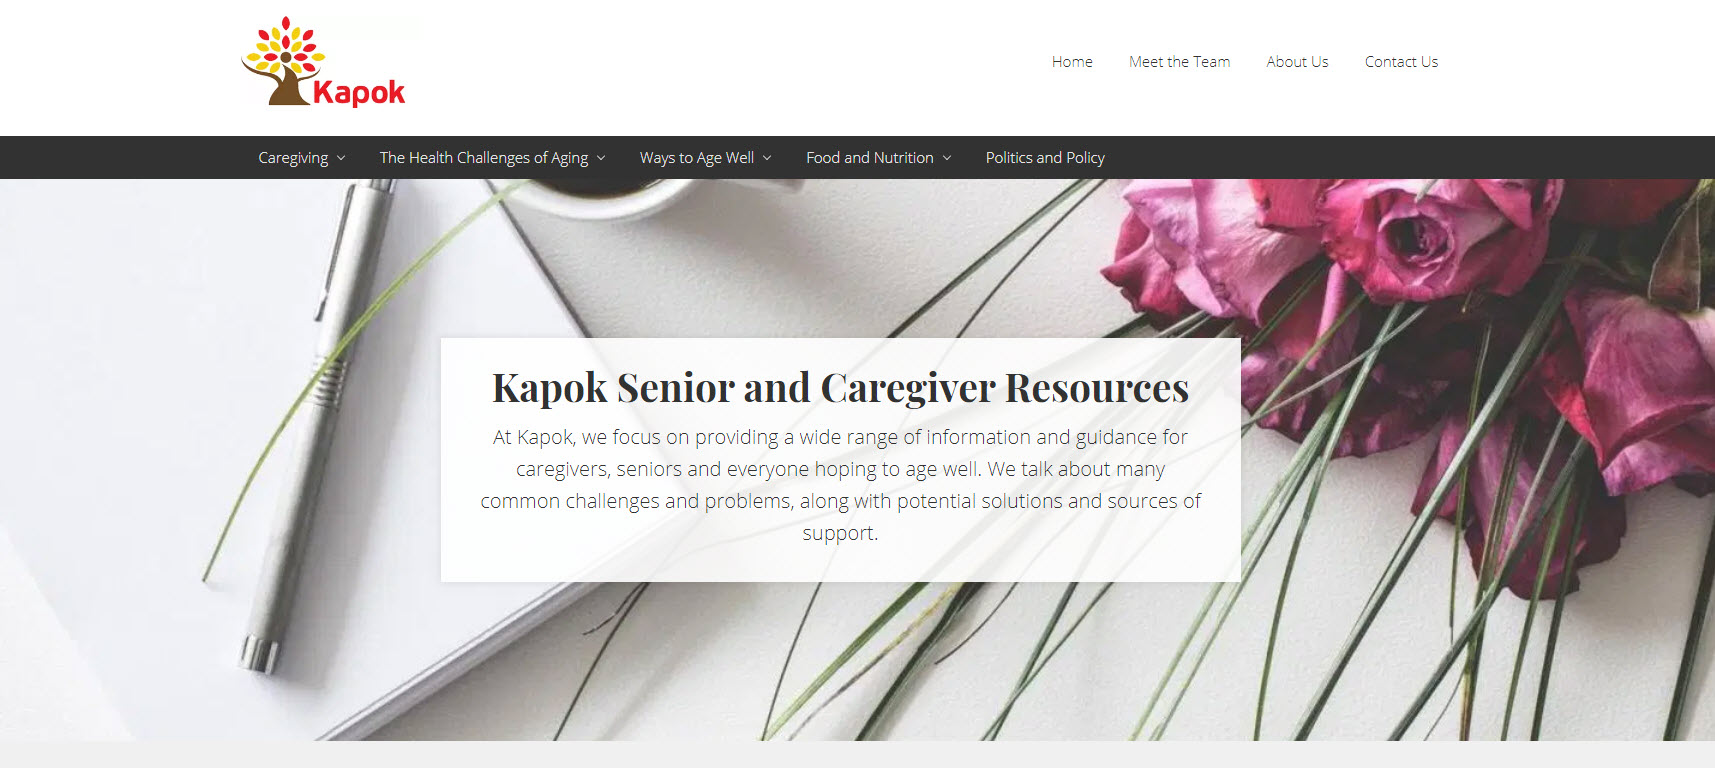 My Portfolio - Casper Green Web Services